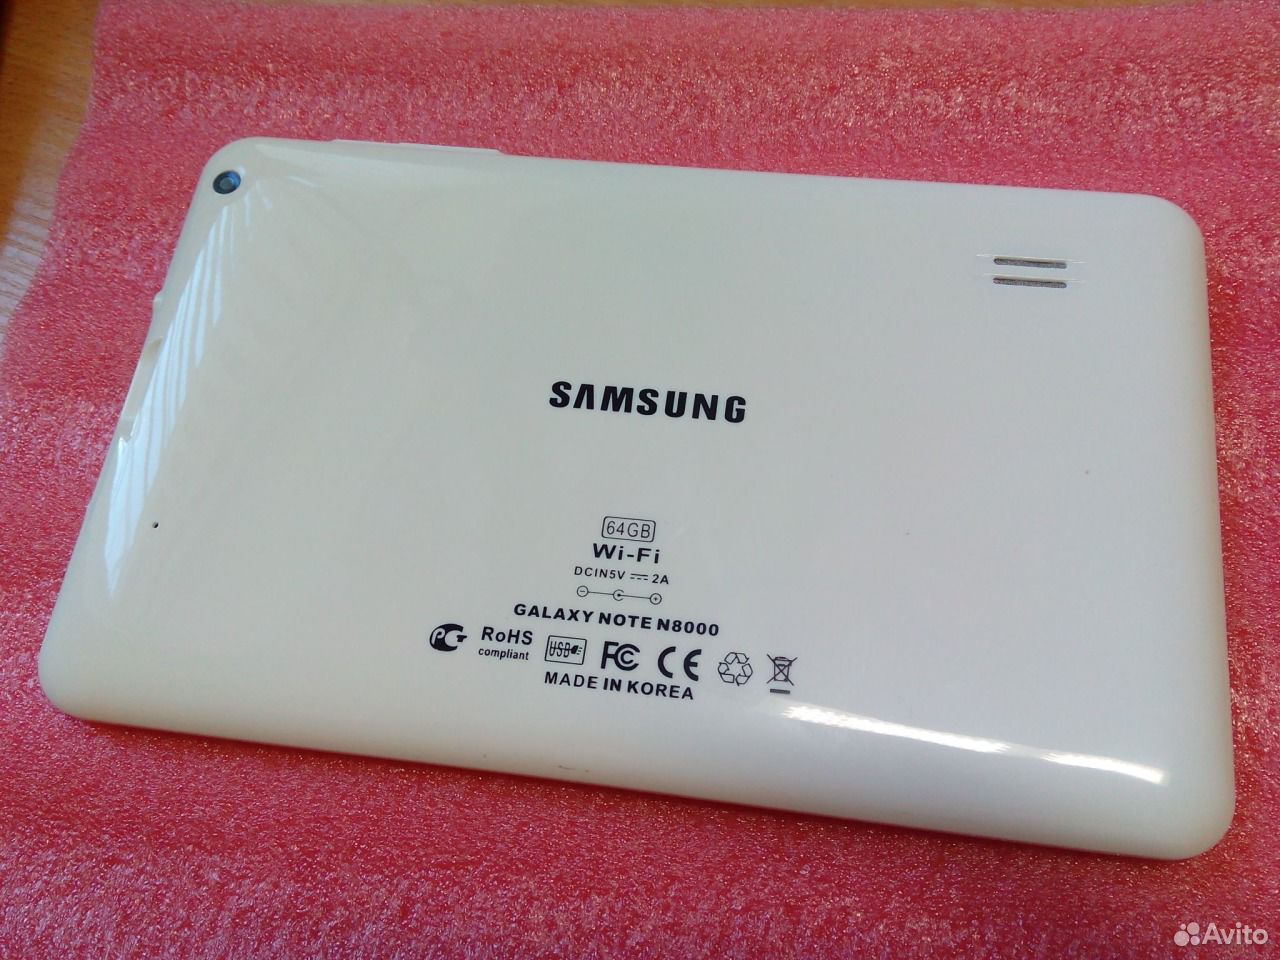 Galaxy note n8000 64gb. Samsung Galaxy Note 8000 64gb. Samsung Note n8000 64gb. Samsung Galaxy Note n8000 64gb китайский. Планшет Samsung Galaxy Note n8000 64gb.